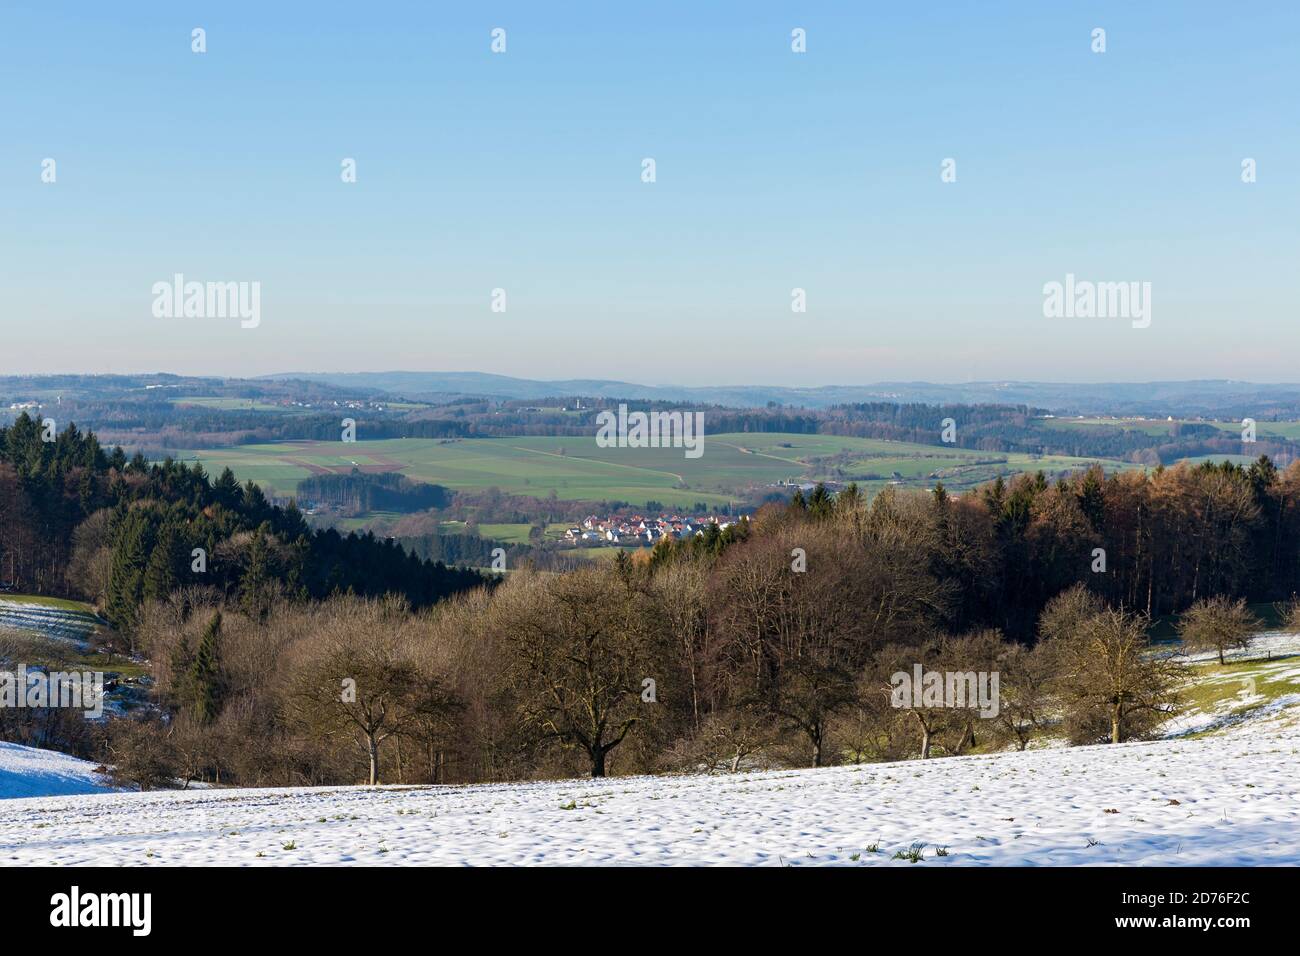 Stauferland, Landschaft, Hügel, Ortschaft, Wald, Felder, Schnee Stock Photo